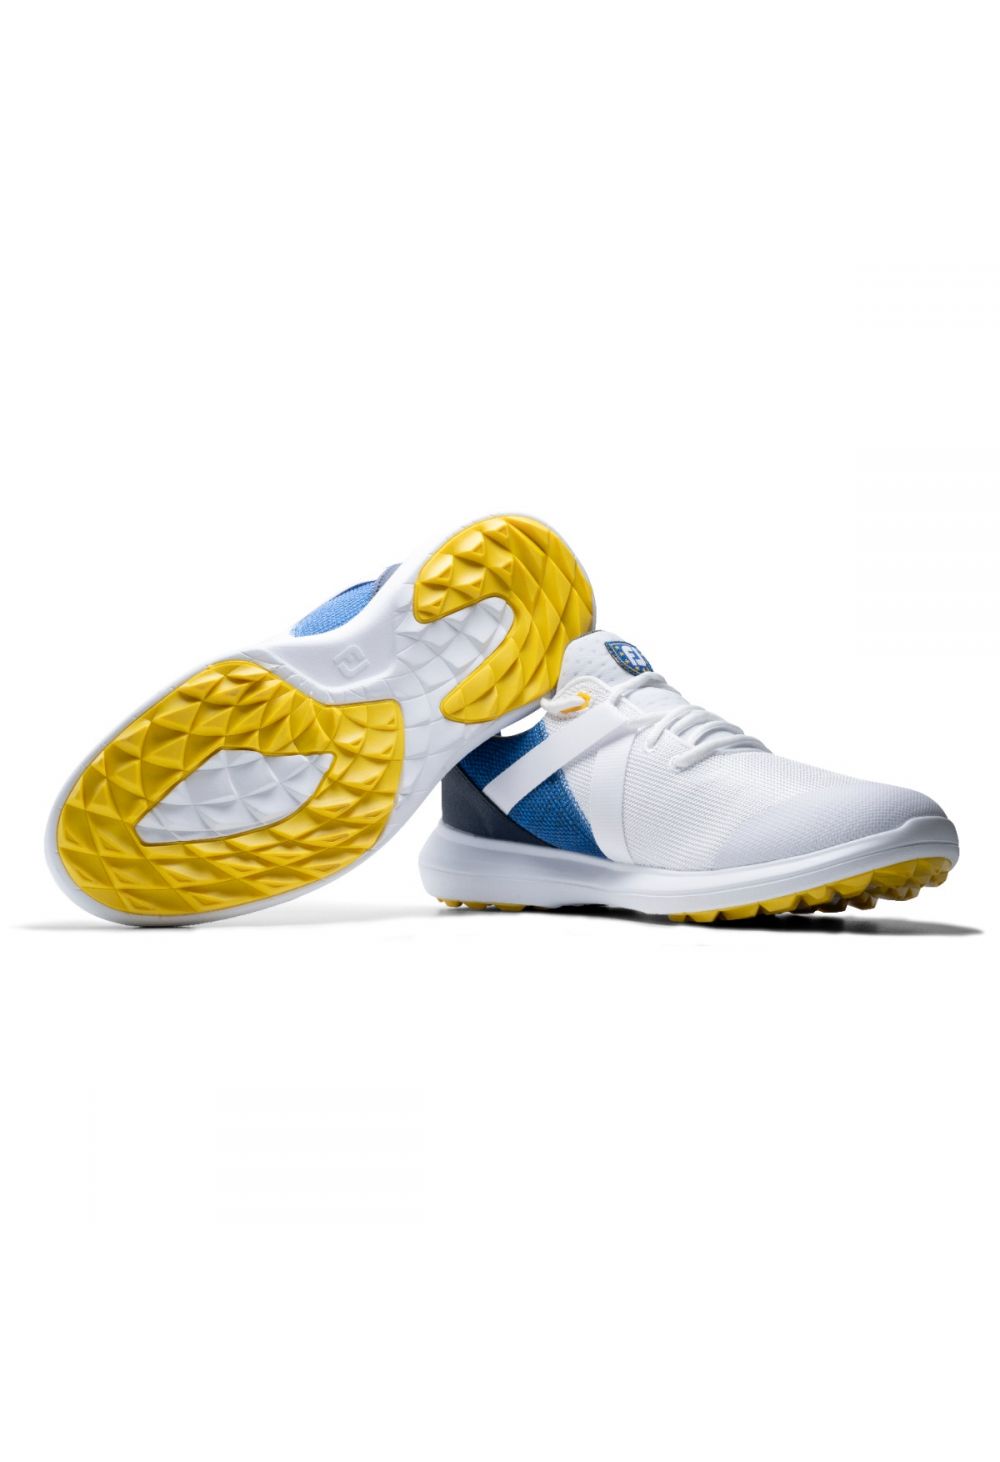 FootJoy Flex LE Ryder Cup Golf Shoes 56257